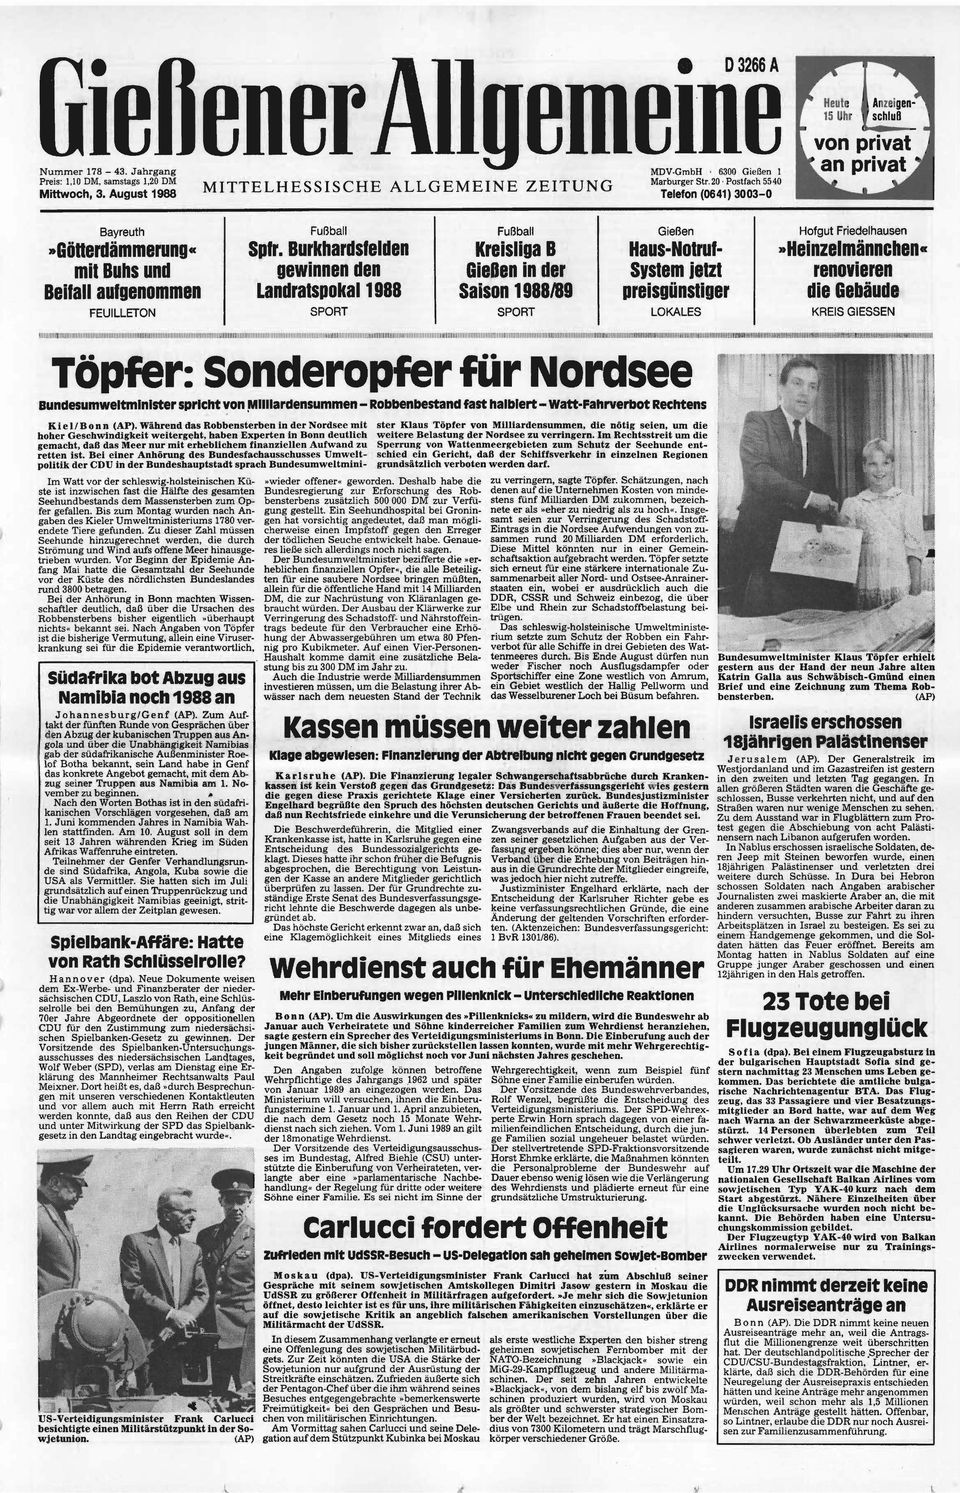 August 1988 Telefon (0641) 3003-0 Heute Anzeigen- 15 Uhr schluß 1 Bayreuth»Götterdämmerung«mit Buhs und Beifall aufgenommen FEUILLETON